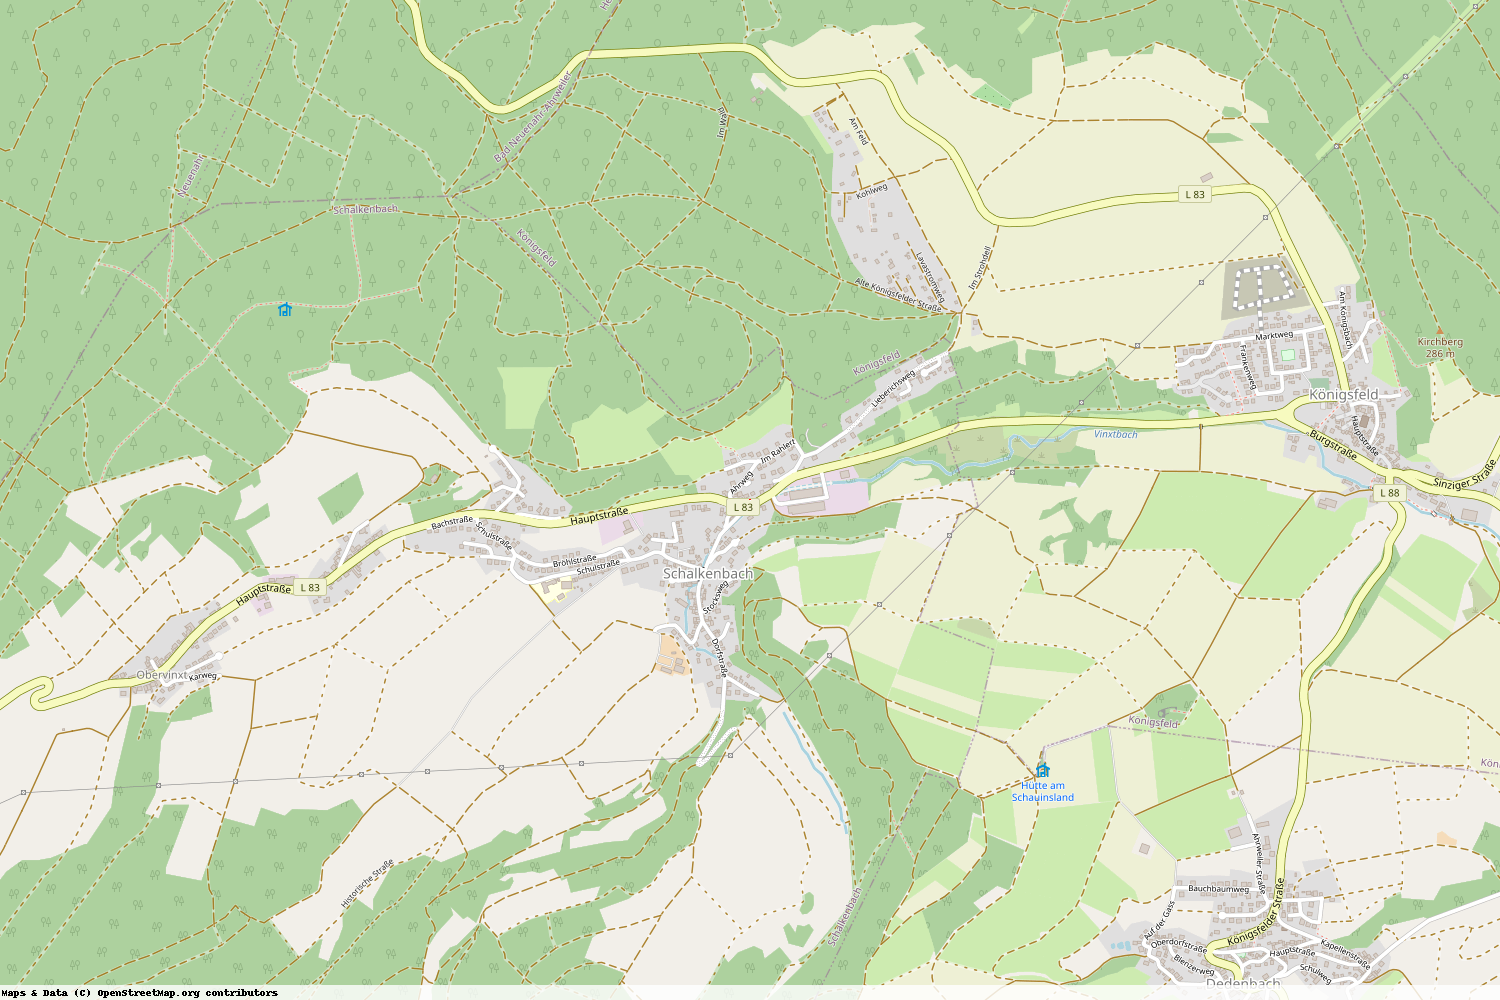 Ist gerade Stromausfall in Rheinland-Pfalz - Ahrweiler - Schalkenbach?